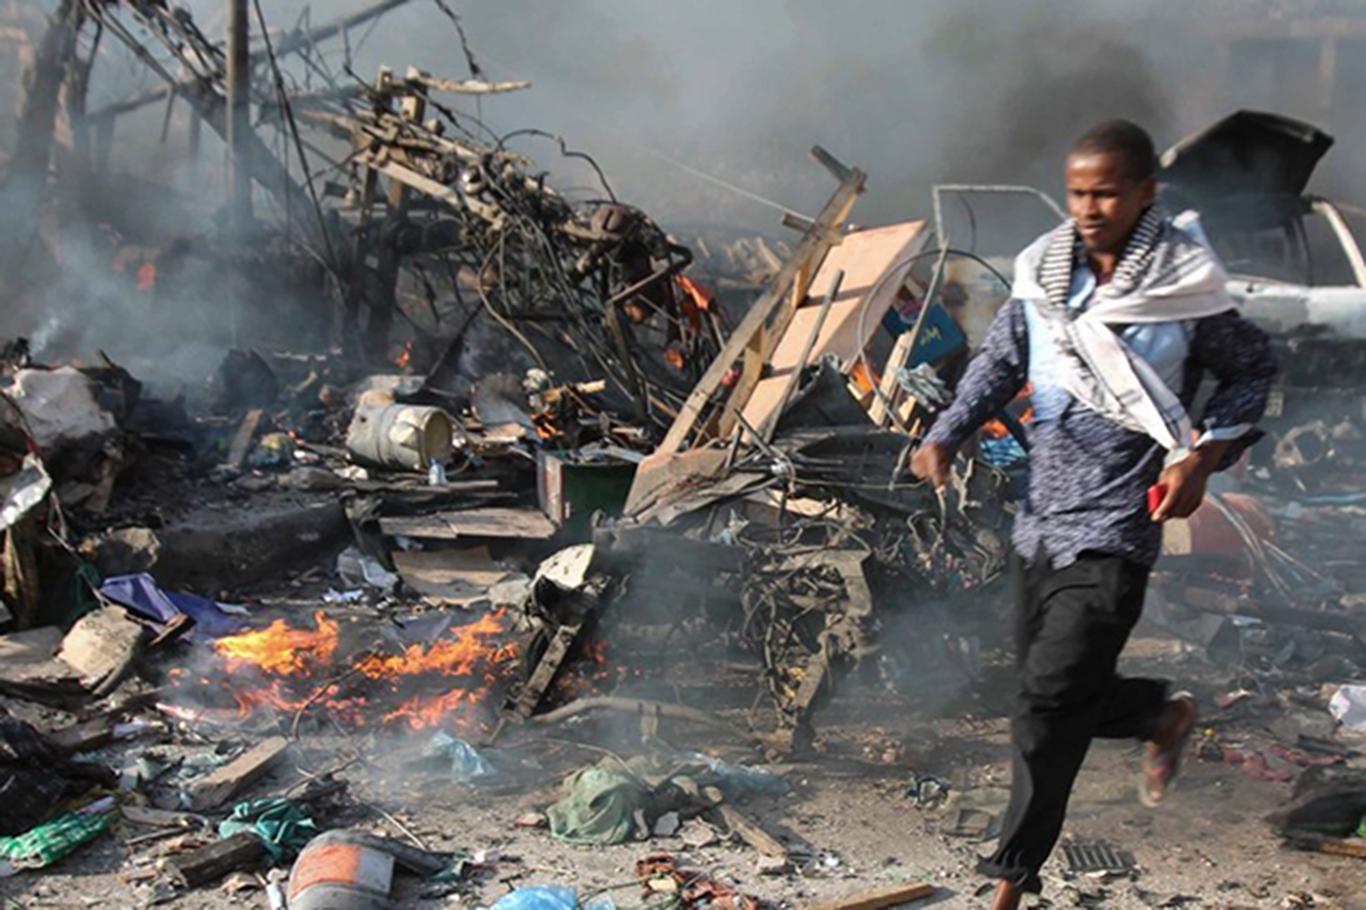 Somali'de gizli savaş yürüten ABD sivil katliamları örtbas etmeye çalışıyor